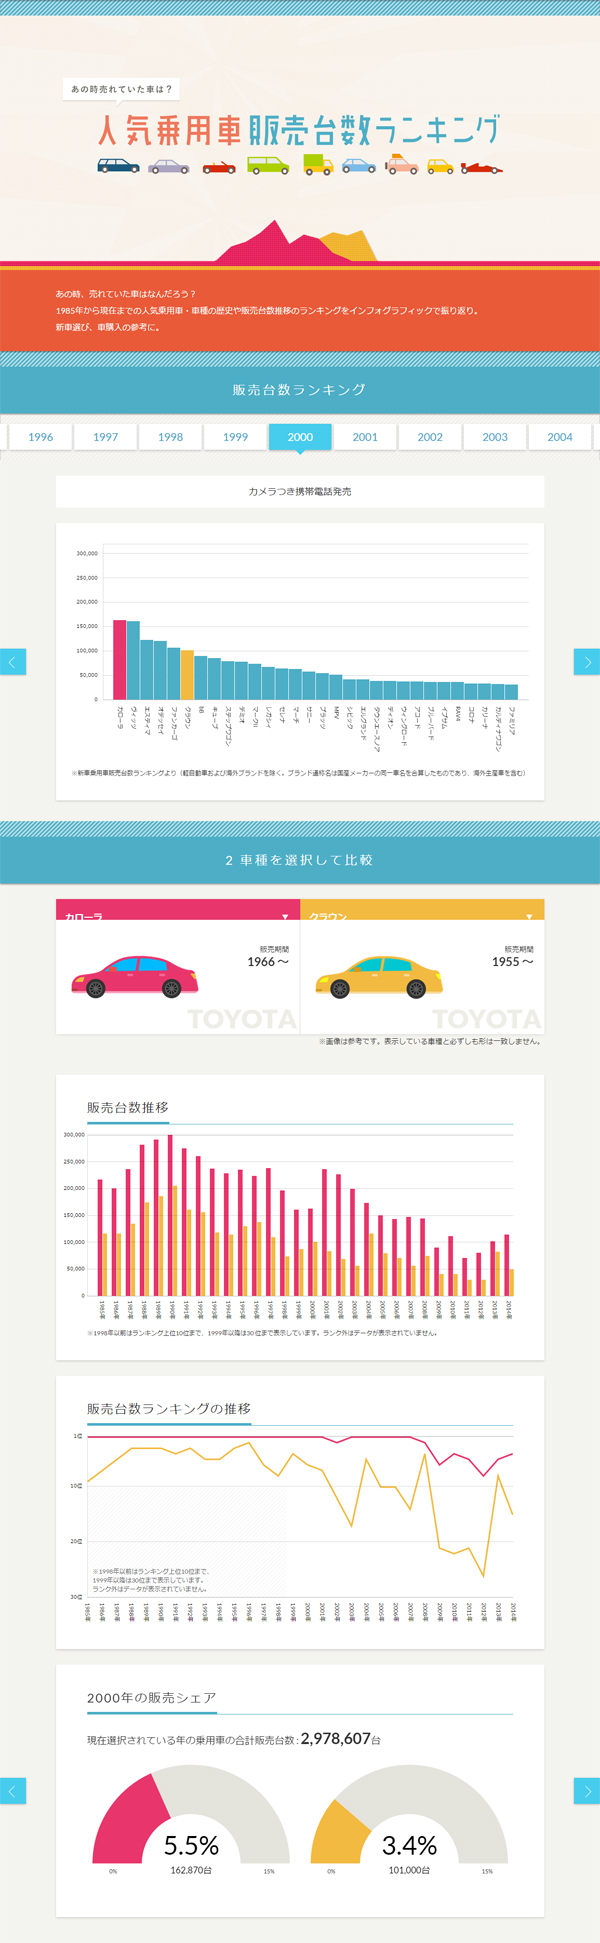 インフォグラフィックス:人気乗用車販売台数ランキング